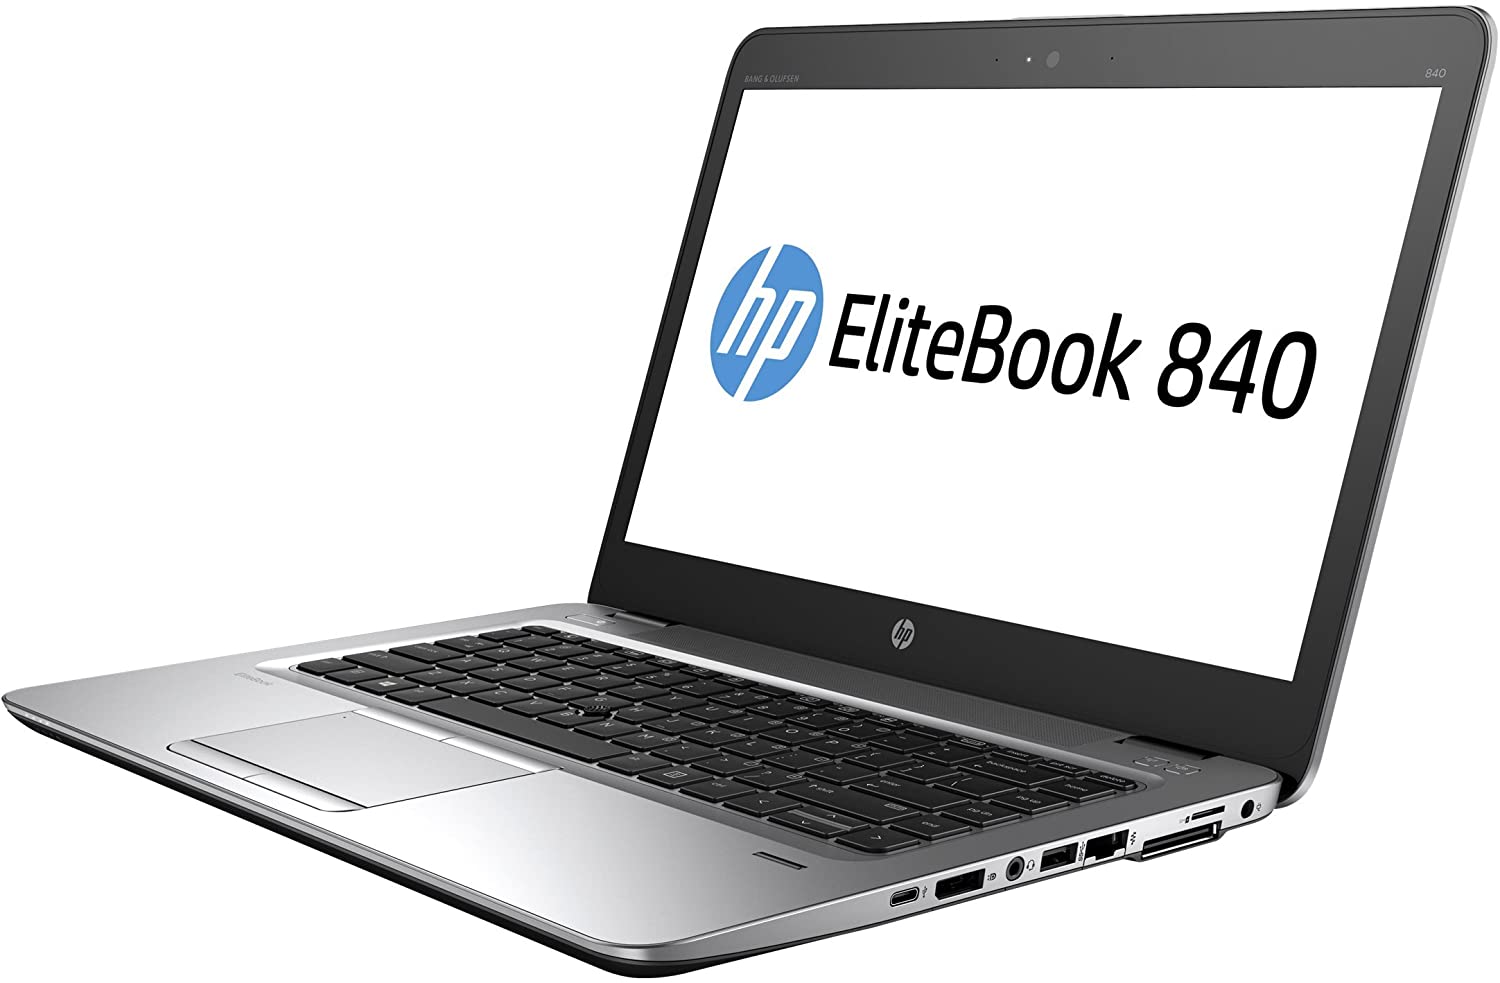 Portátil Ultrabook HP Elitebook 840 G3 GRADO B con teclado en castellano (Intel Core i5 6200U 2.3Ghz/8GB/240SSD/14FHD/NO-DVD/W10P) Preinstalado